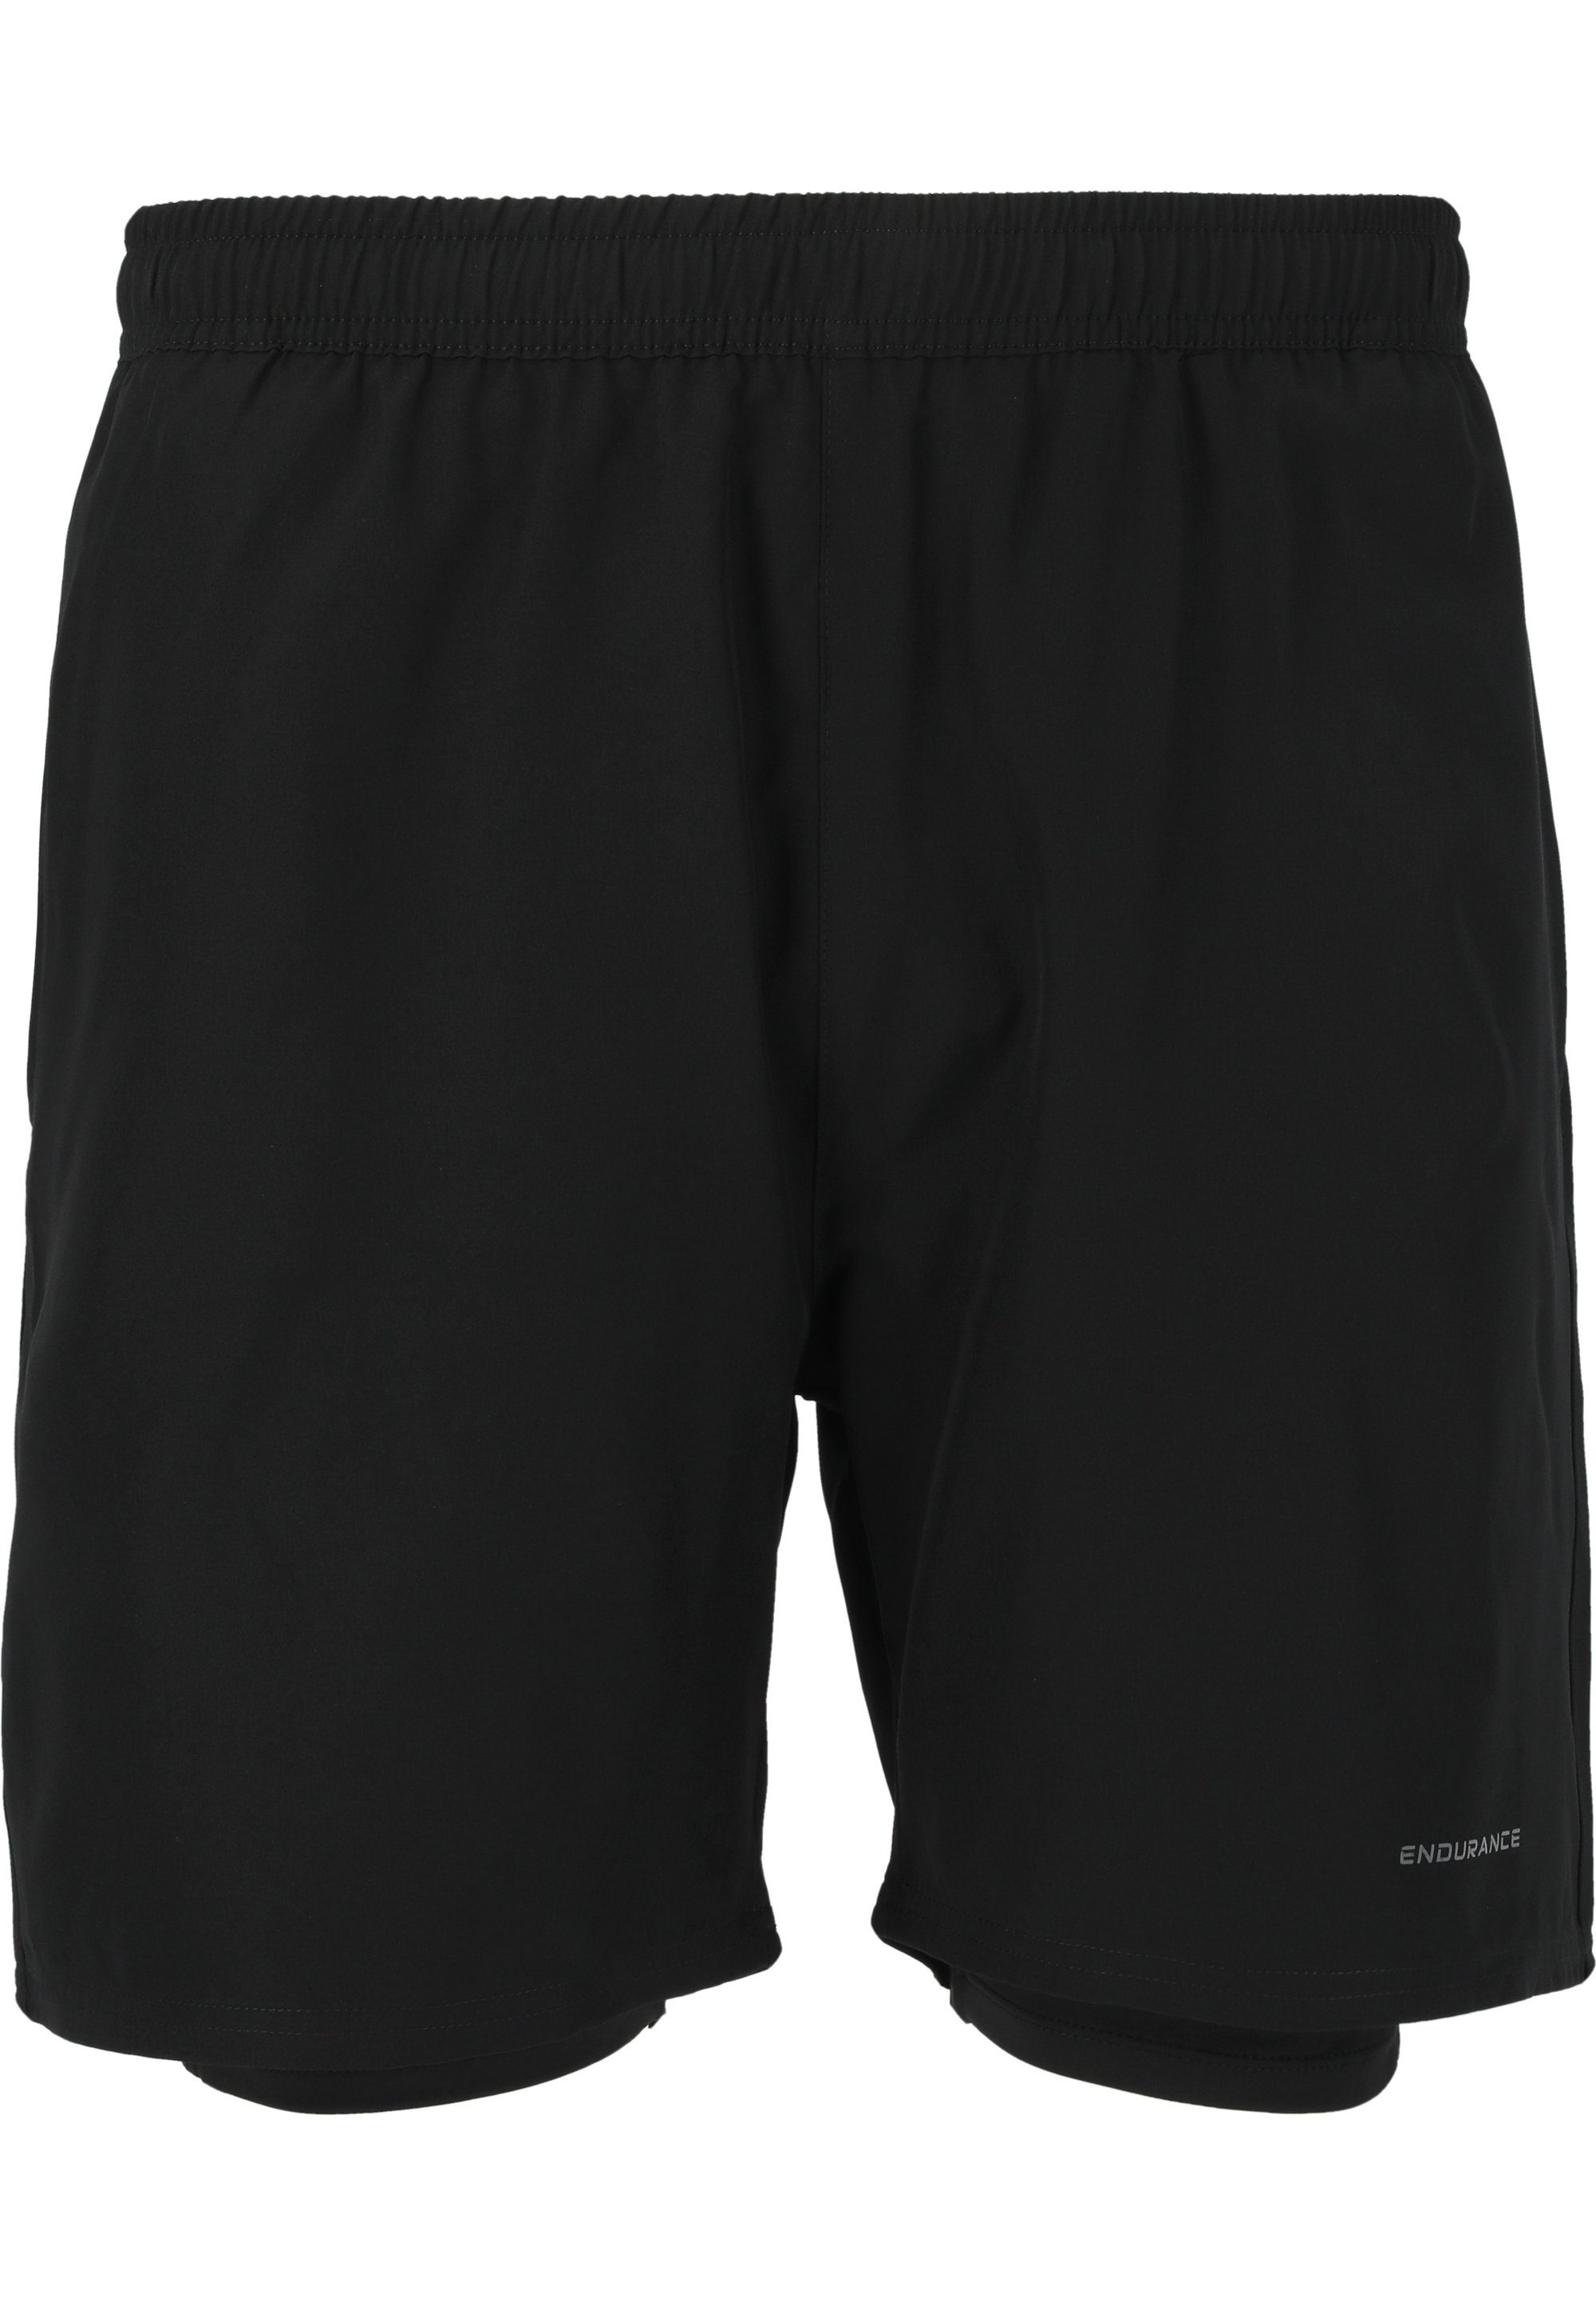 2-in-1-Design und Kros Dry Im schwarz Shorts mit Stretch-Funktion Quick ENDURANCE